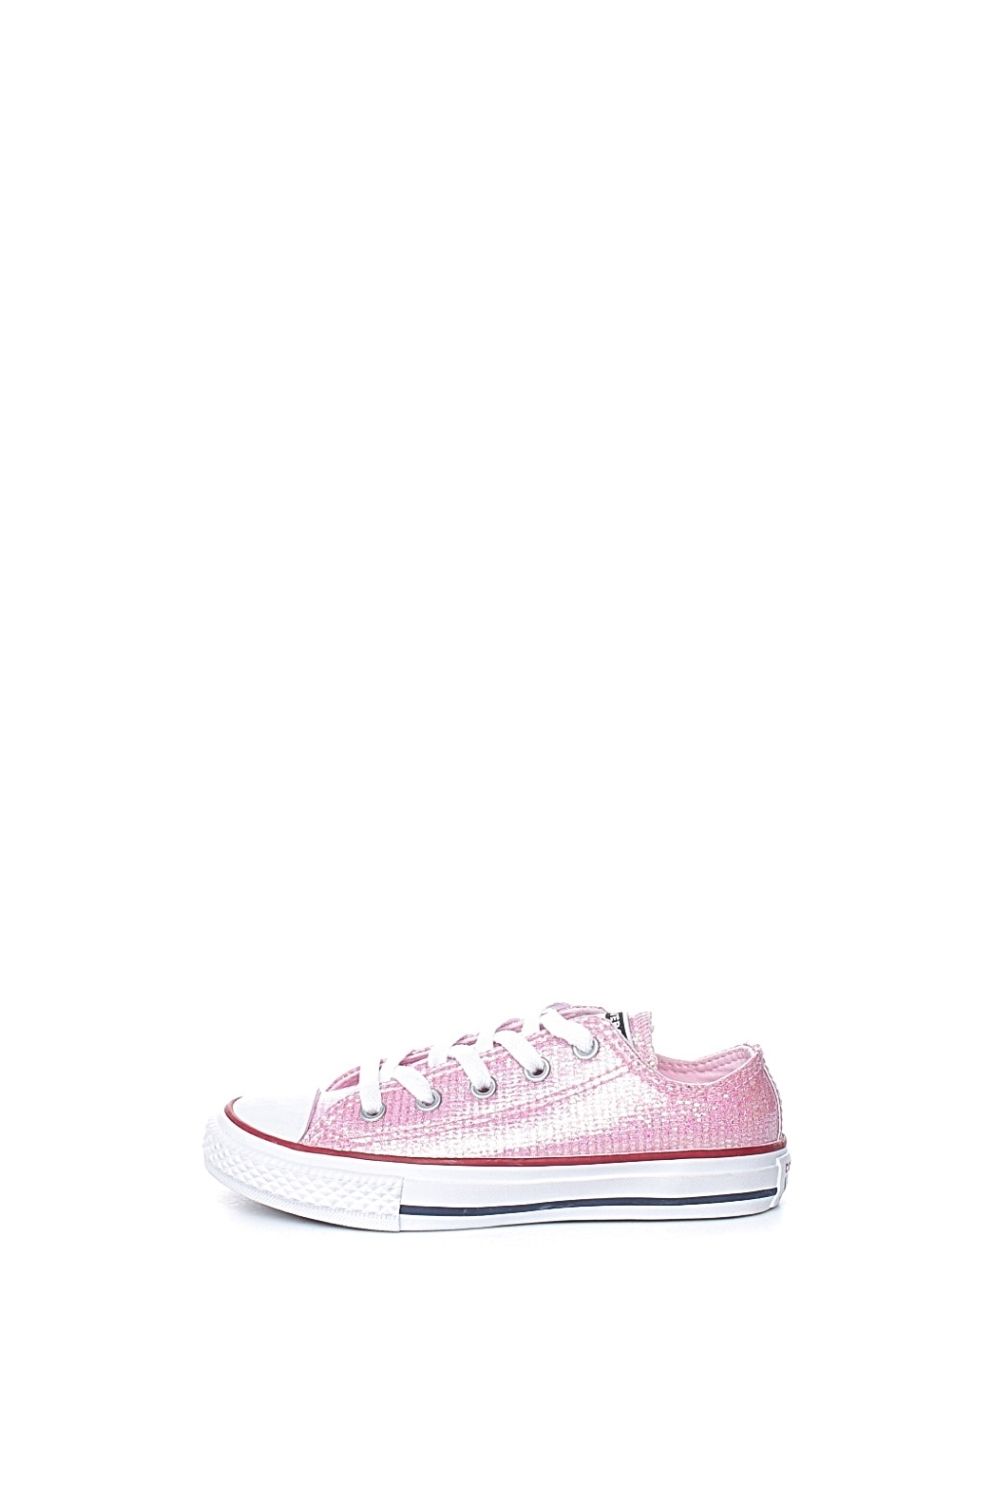 Παιδικά/Girls/Παπούτσια/Sneakers CONVERSE - Παιδικά sneakers με glitter CONVERSE Chuck Taylor All Star ροζ